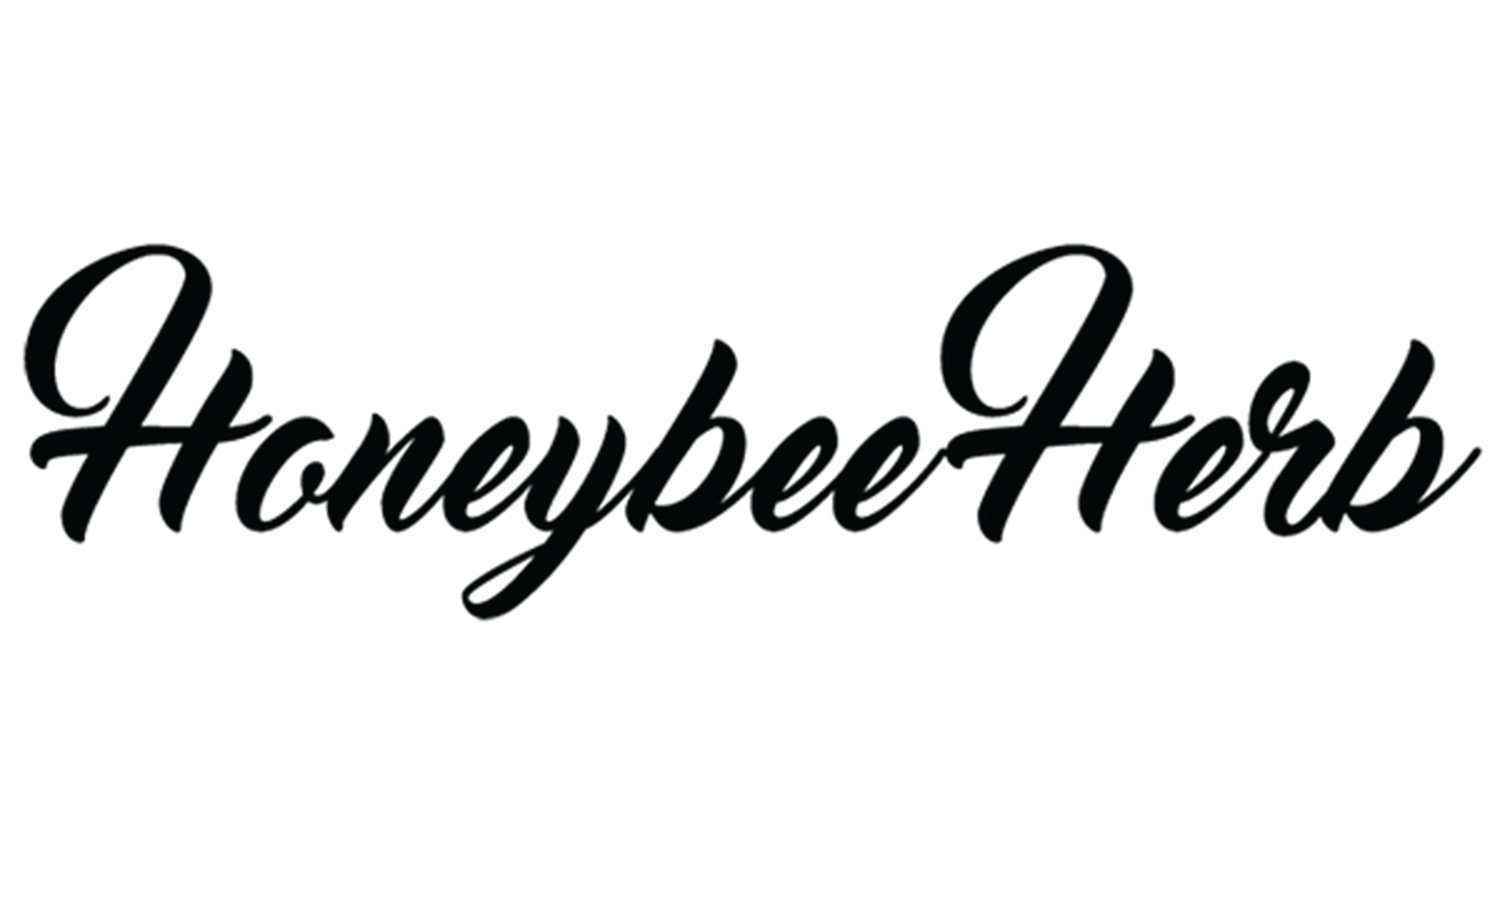 Honeybee Herb Wholesale